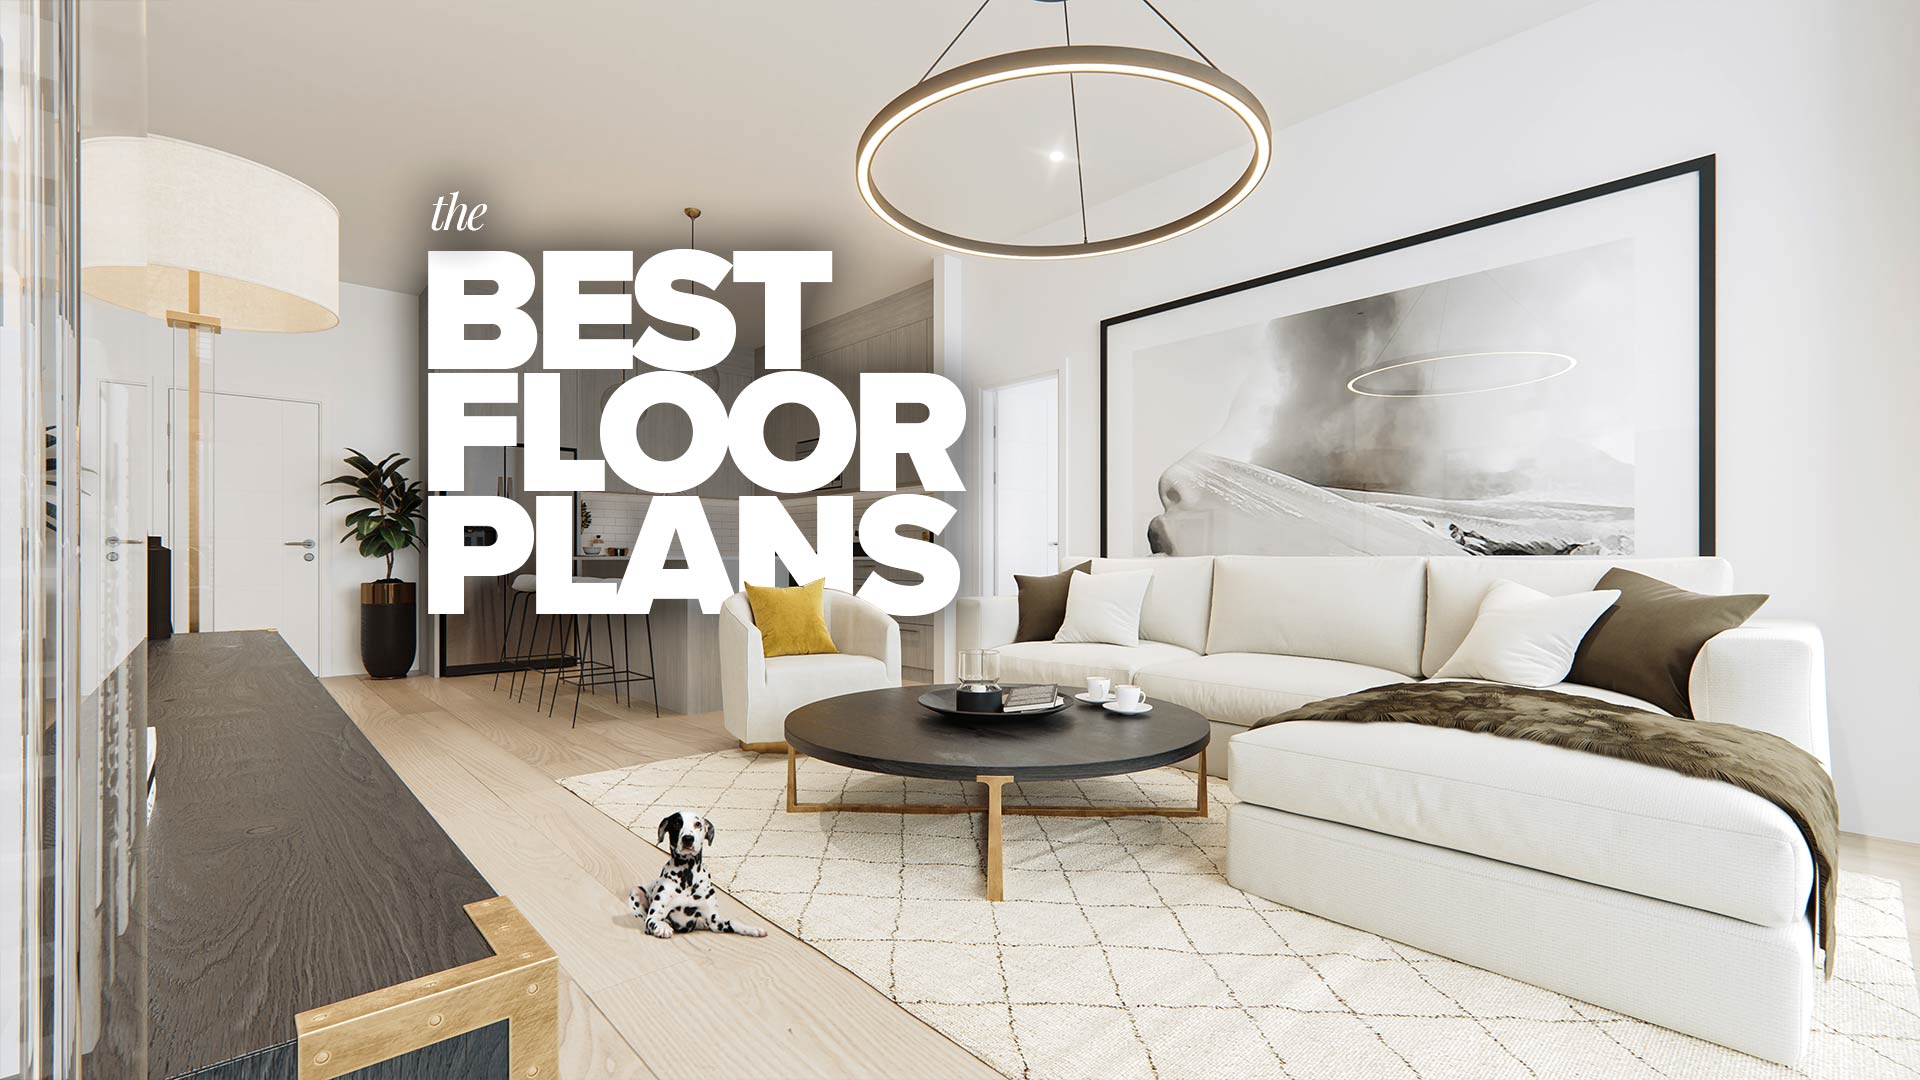 Truman - Condos - Interiors - The BEST Floor Plans